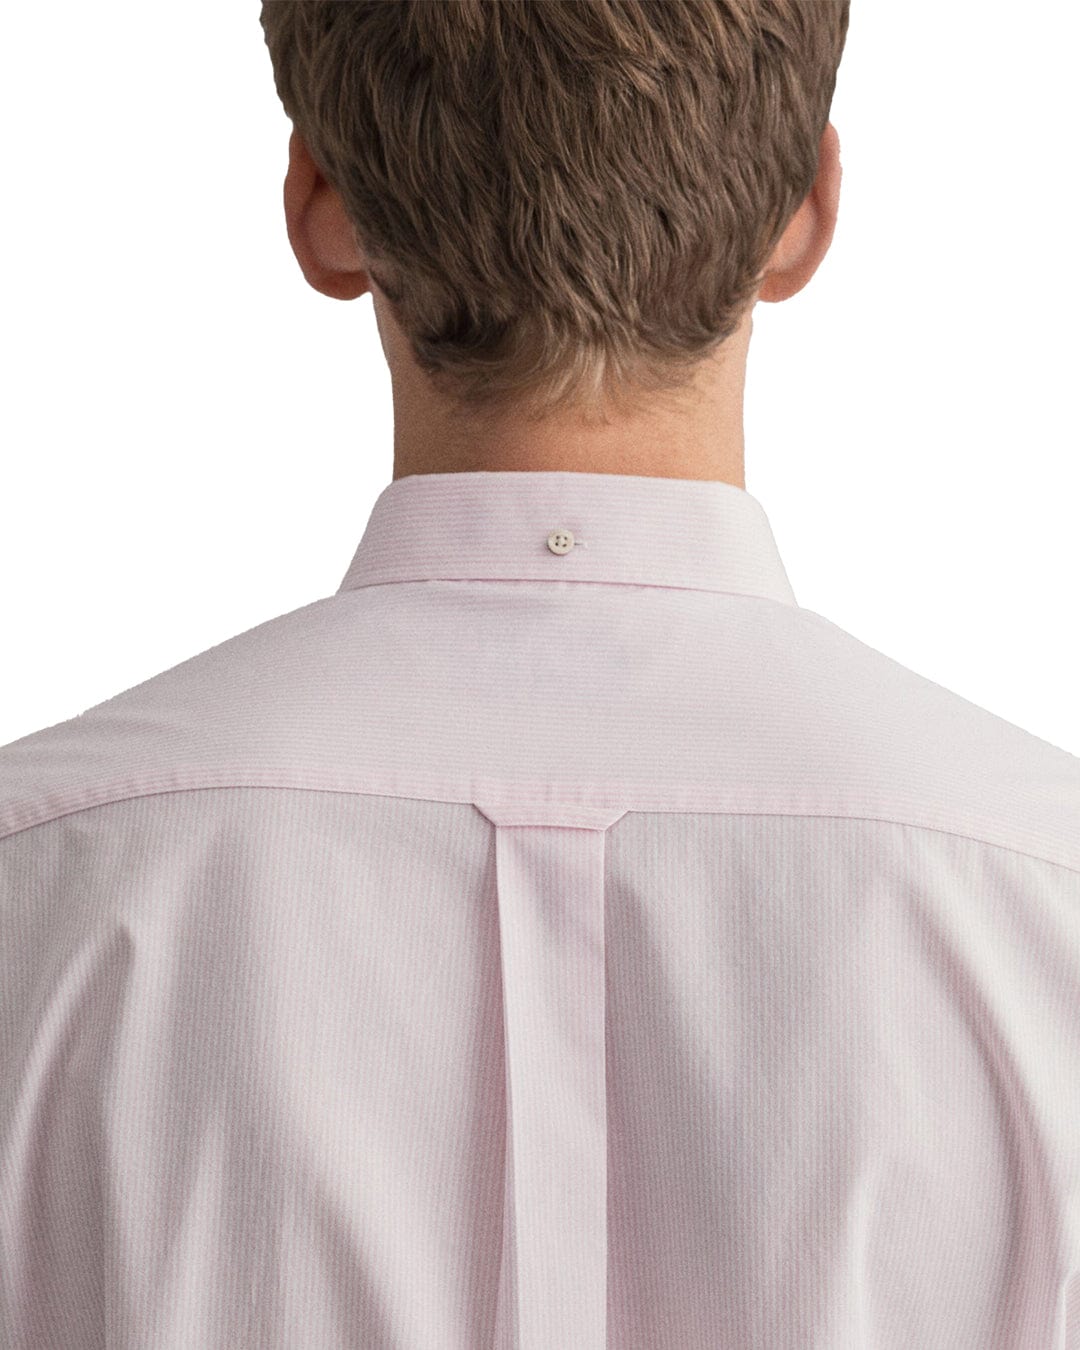 Gant Shirts Gant Regular Fit Short Sleeved Banker Pink Striped Broadcloth Shirt